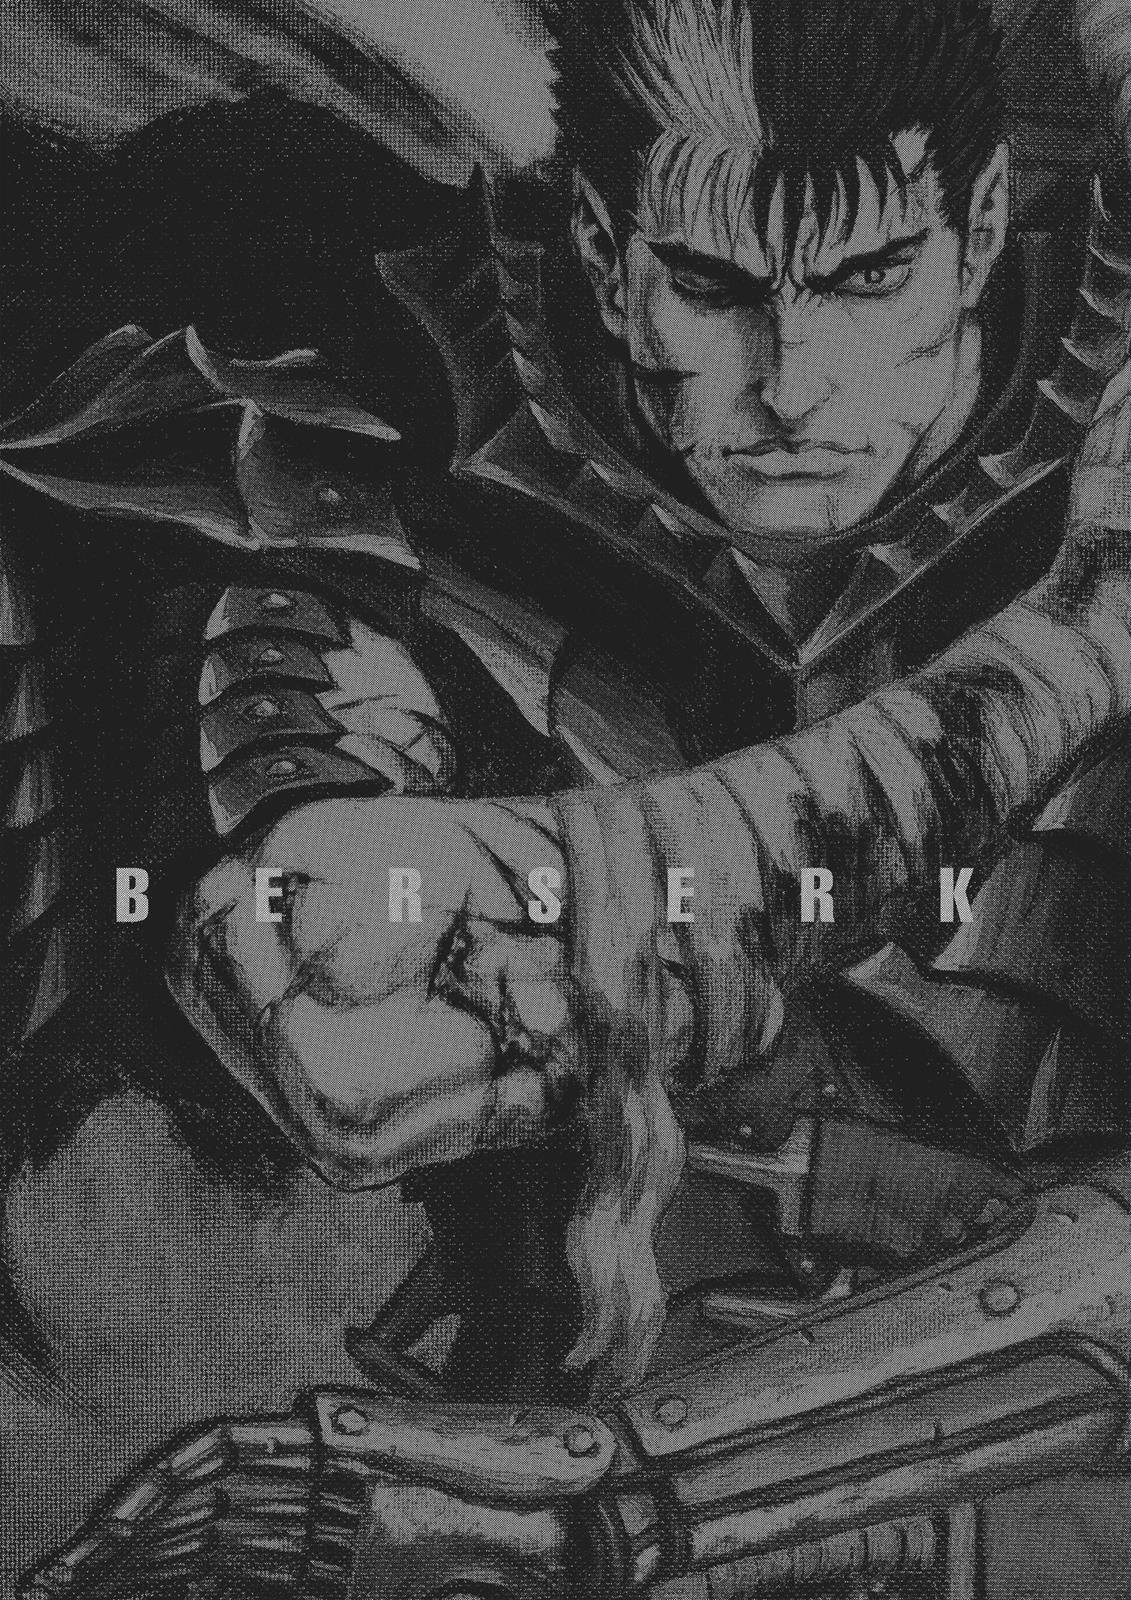 Berserk Manga Chapter 355 image 19